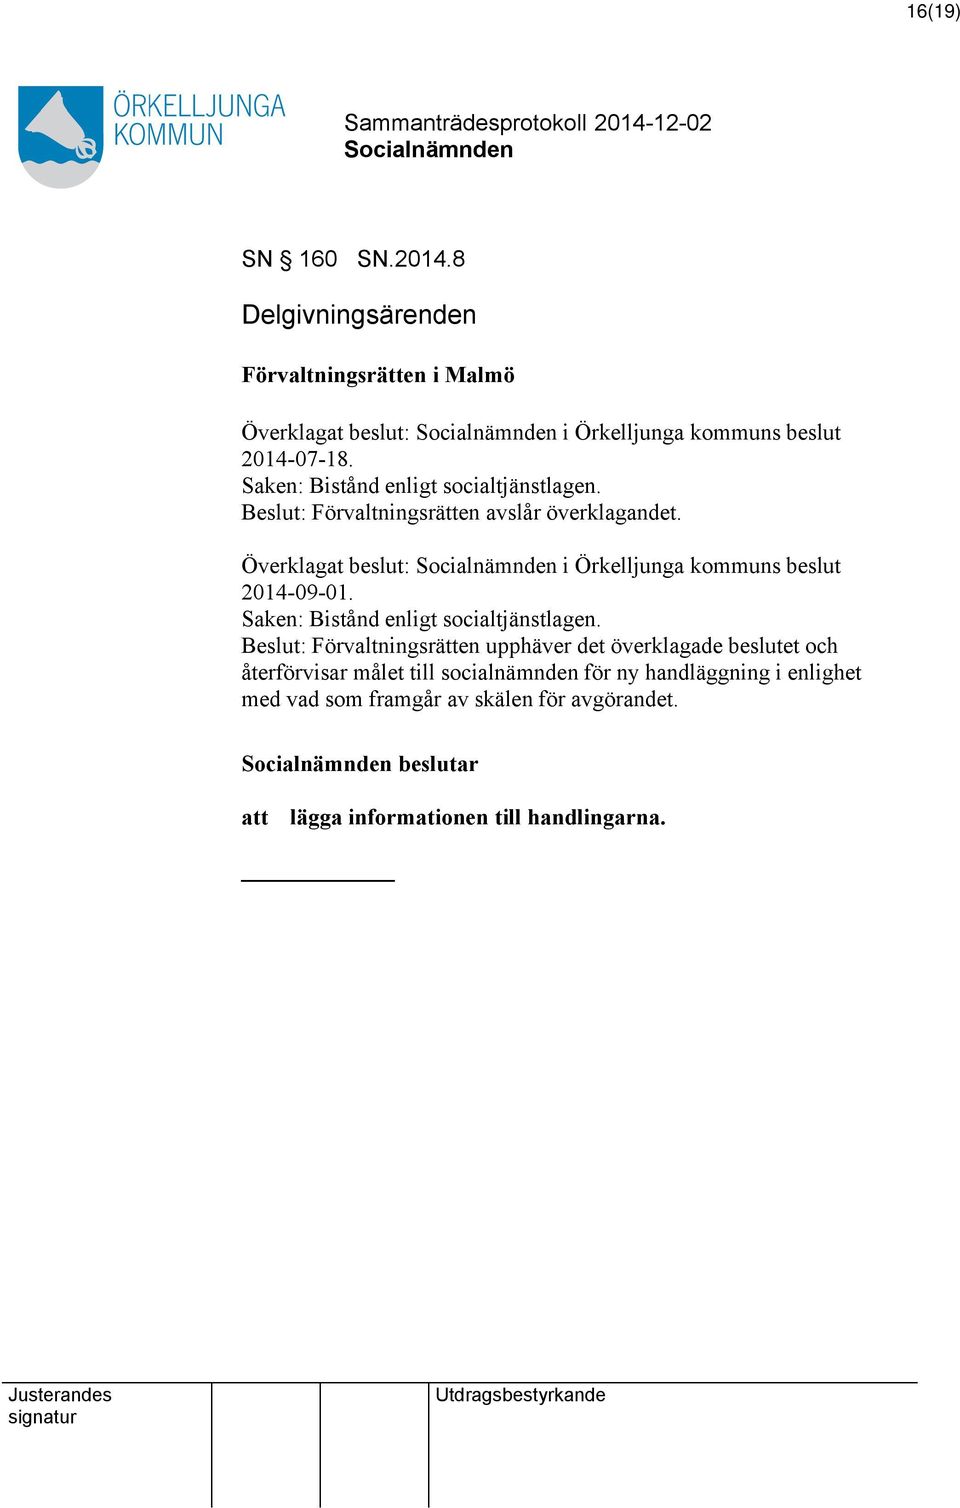 Överklagat beslut: i Örkelljunga kommuns beslut 2014-09-01. Saken: Bistånd enligt socialtjänstlagen.